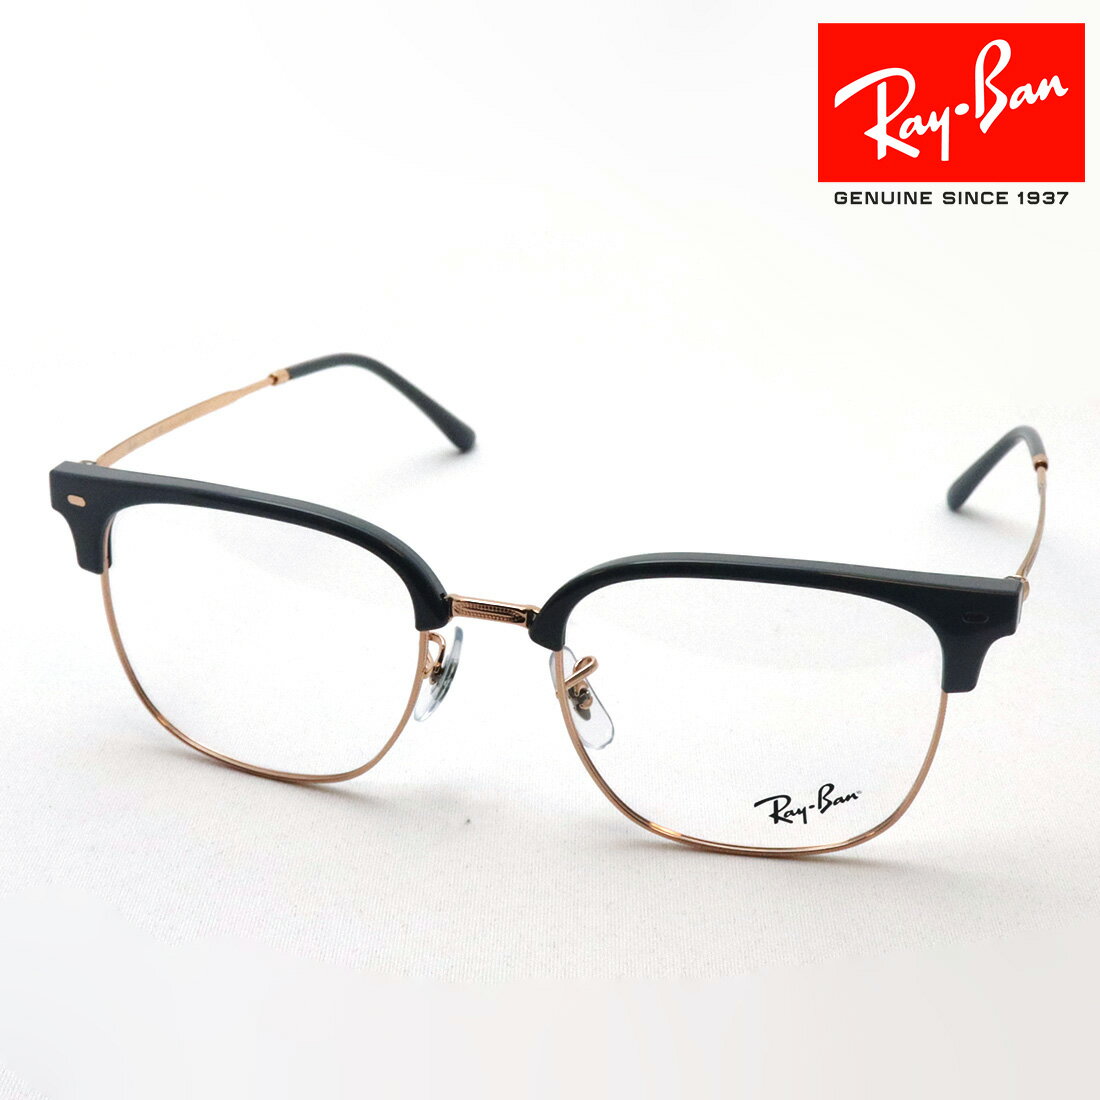 NewModel 正規レイバン日本最大級の品揃え レイバン メガネ フレーム ニュークラブマスター Ray-Ban RX7216F 8322 53 伊達メガネ 度付き ブルーライト カット 眼鏡 RayBan ブロー グレー系